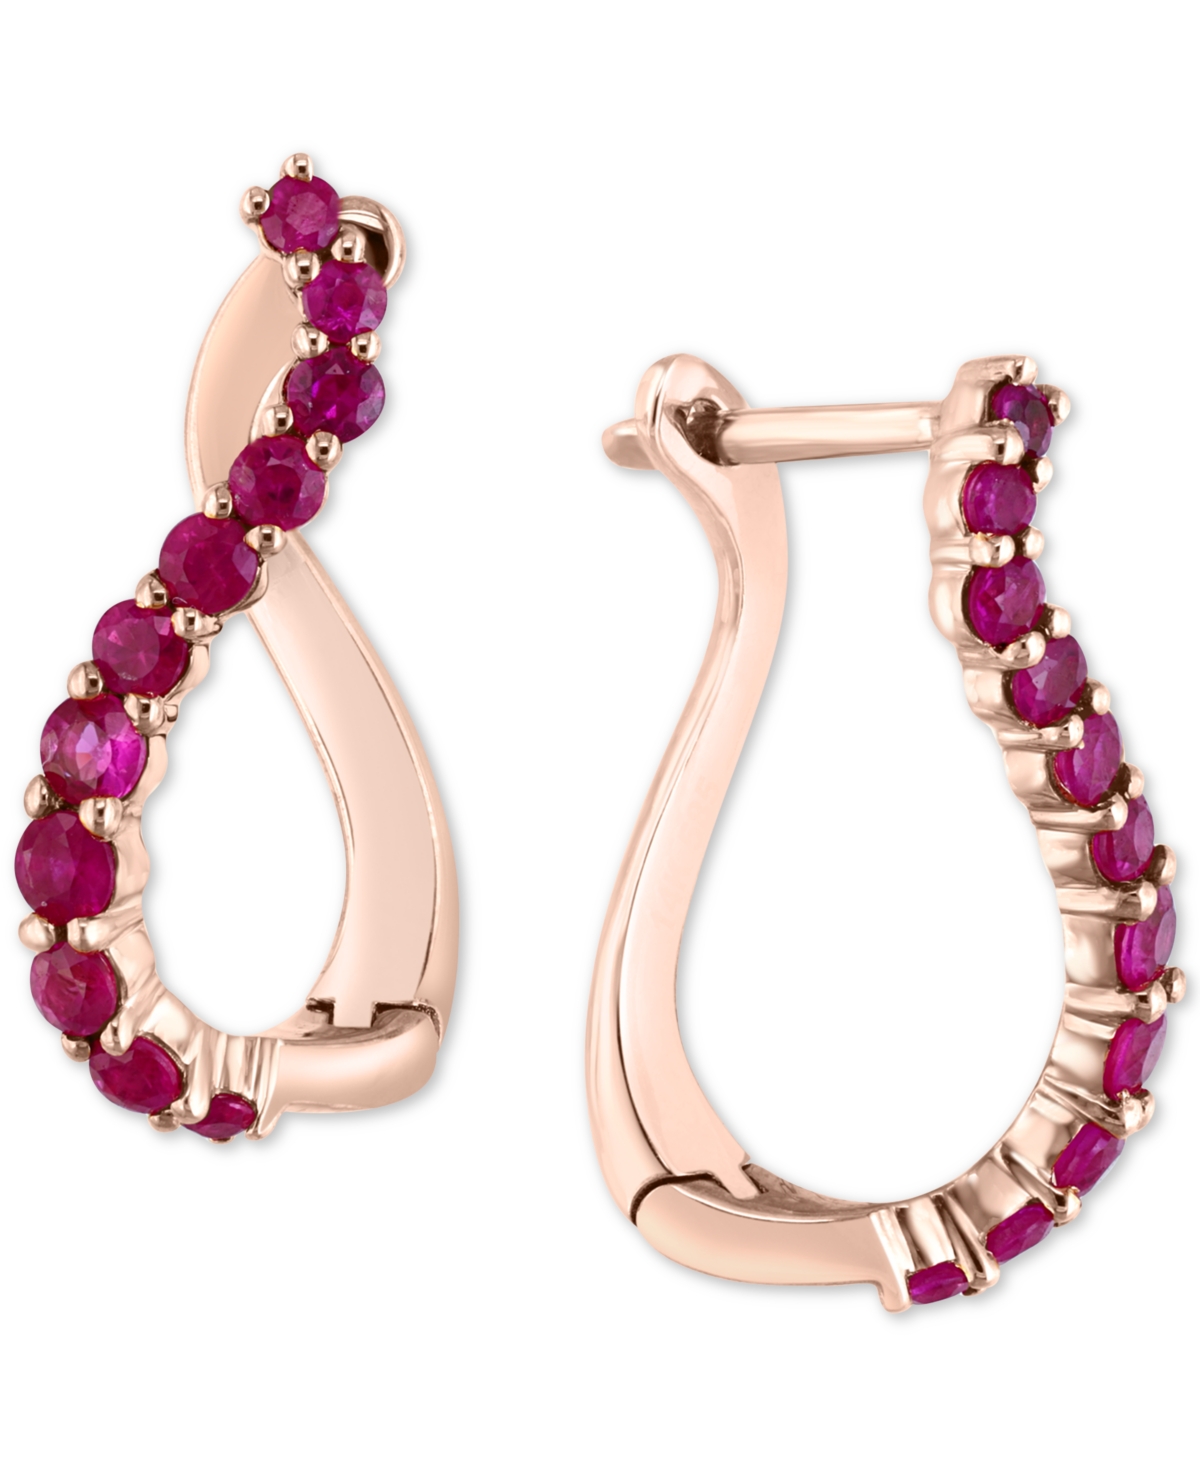 Ruby Swirl Hoop Earrings (3/4 ct. t.w.) in 14k Rose Gold - Ruby